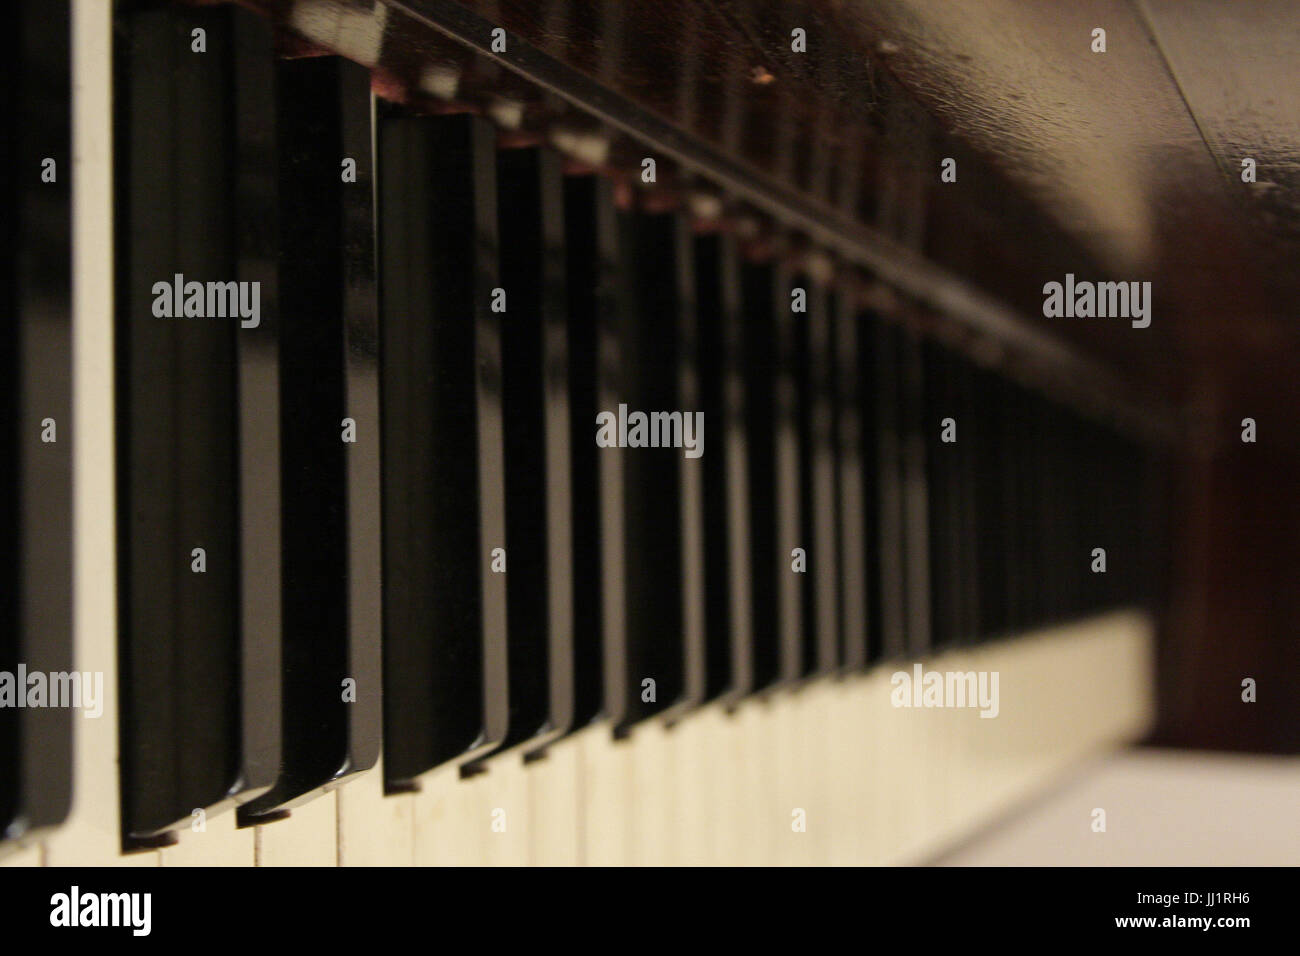 Keyboard, Piano, São Paulo, Brazil Stock Photo